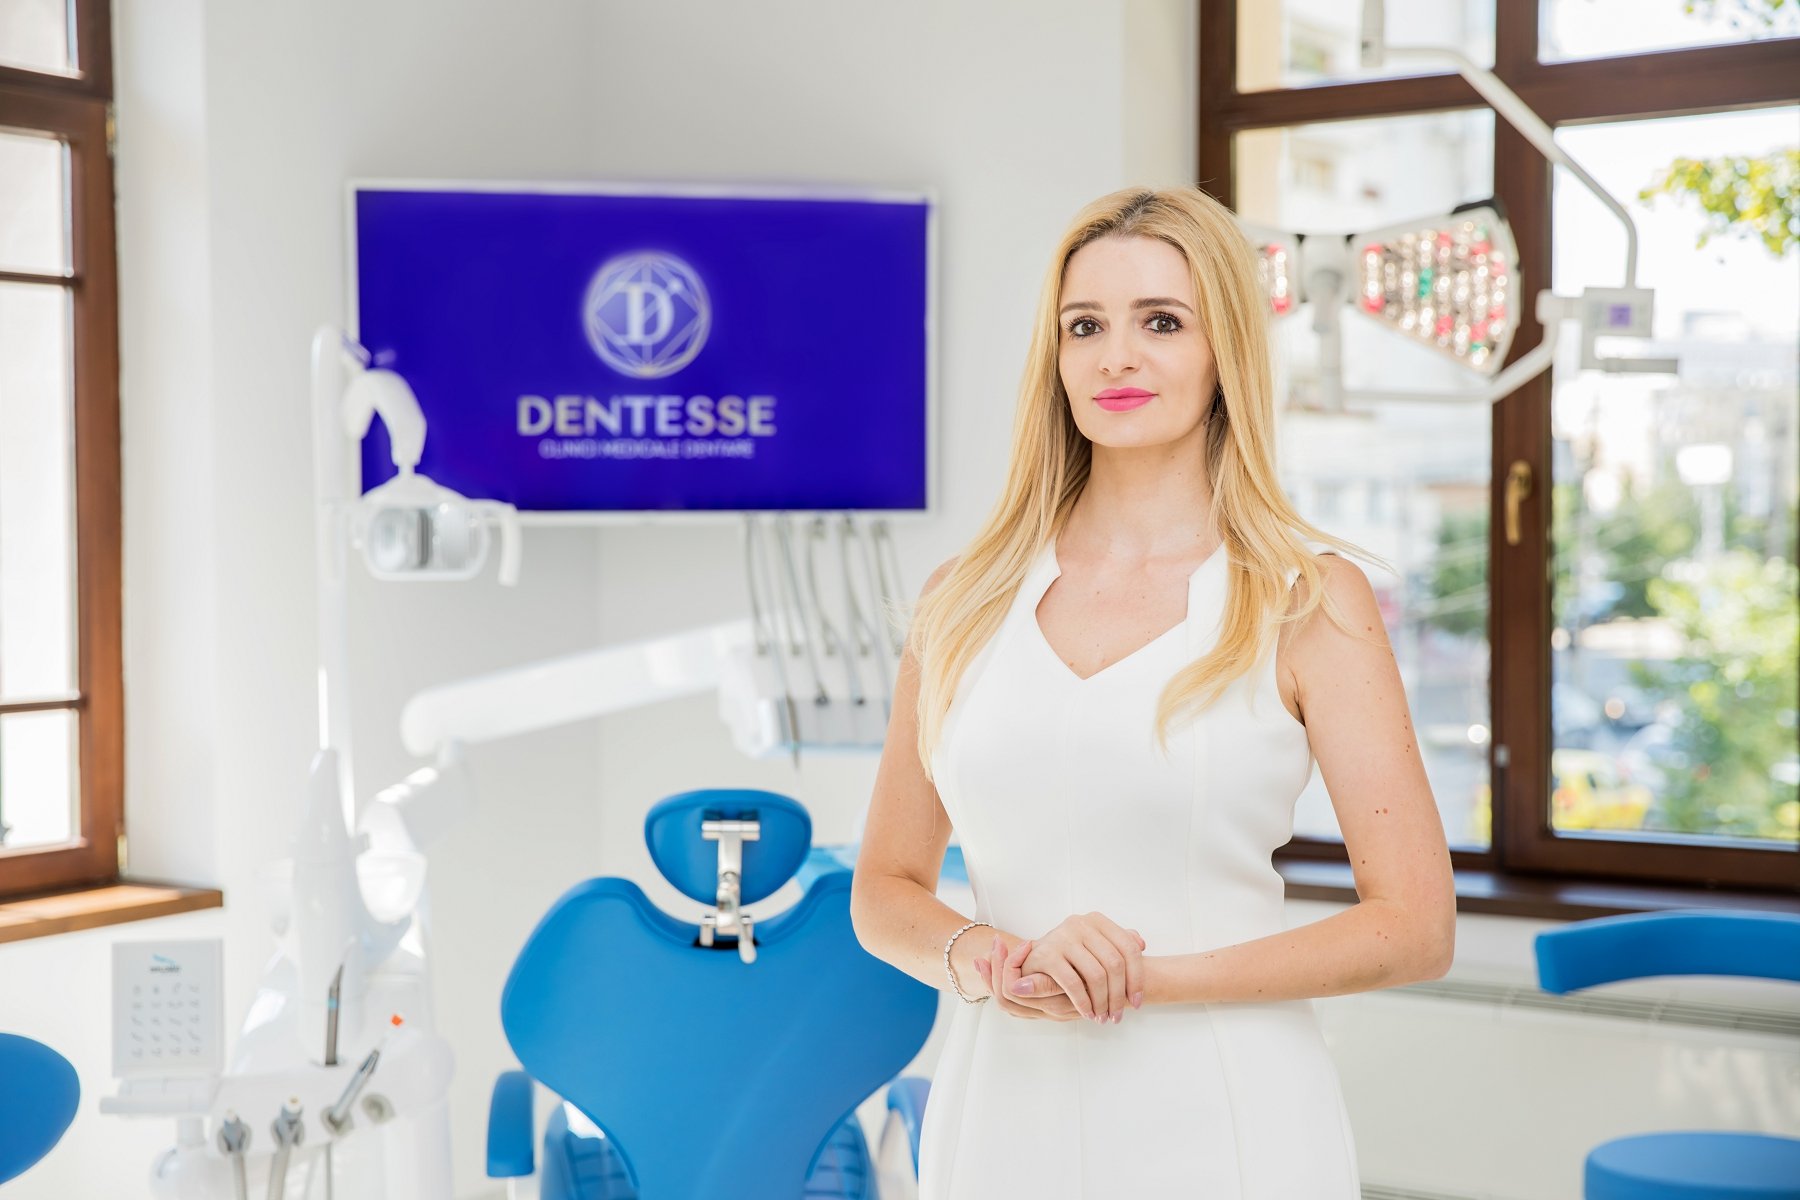  Grupul de clinici DENTESSE a inaugurat în Iași un nou centru regional de stomatologie și implantologie dentară (P)